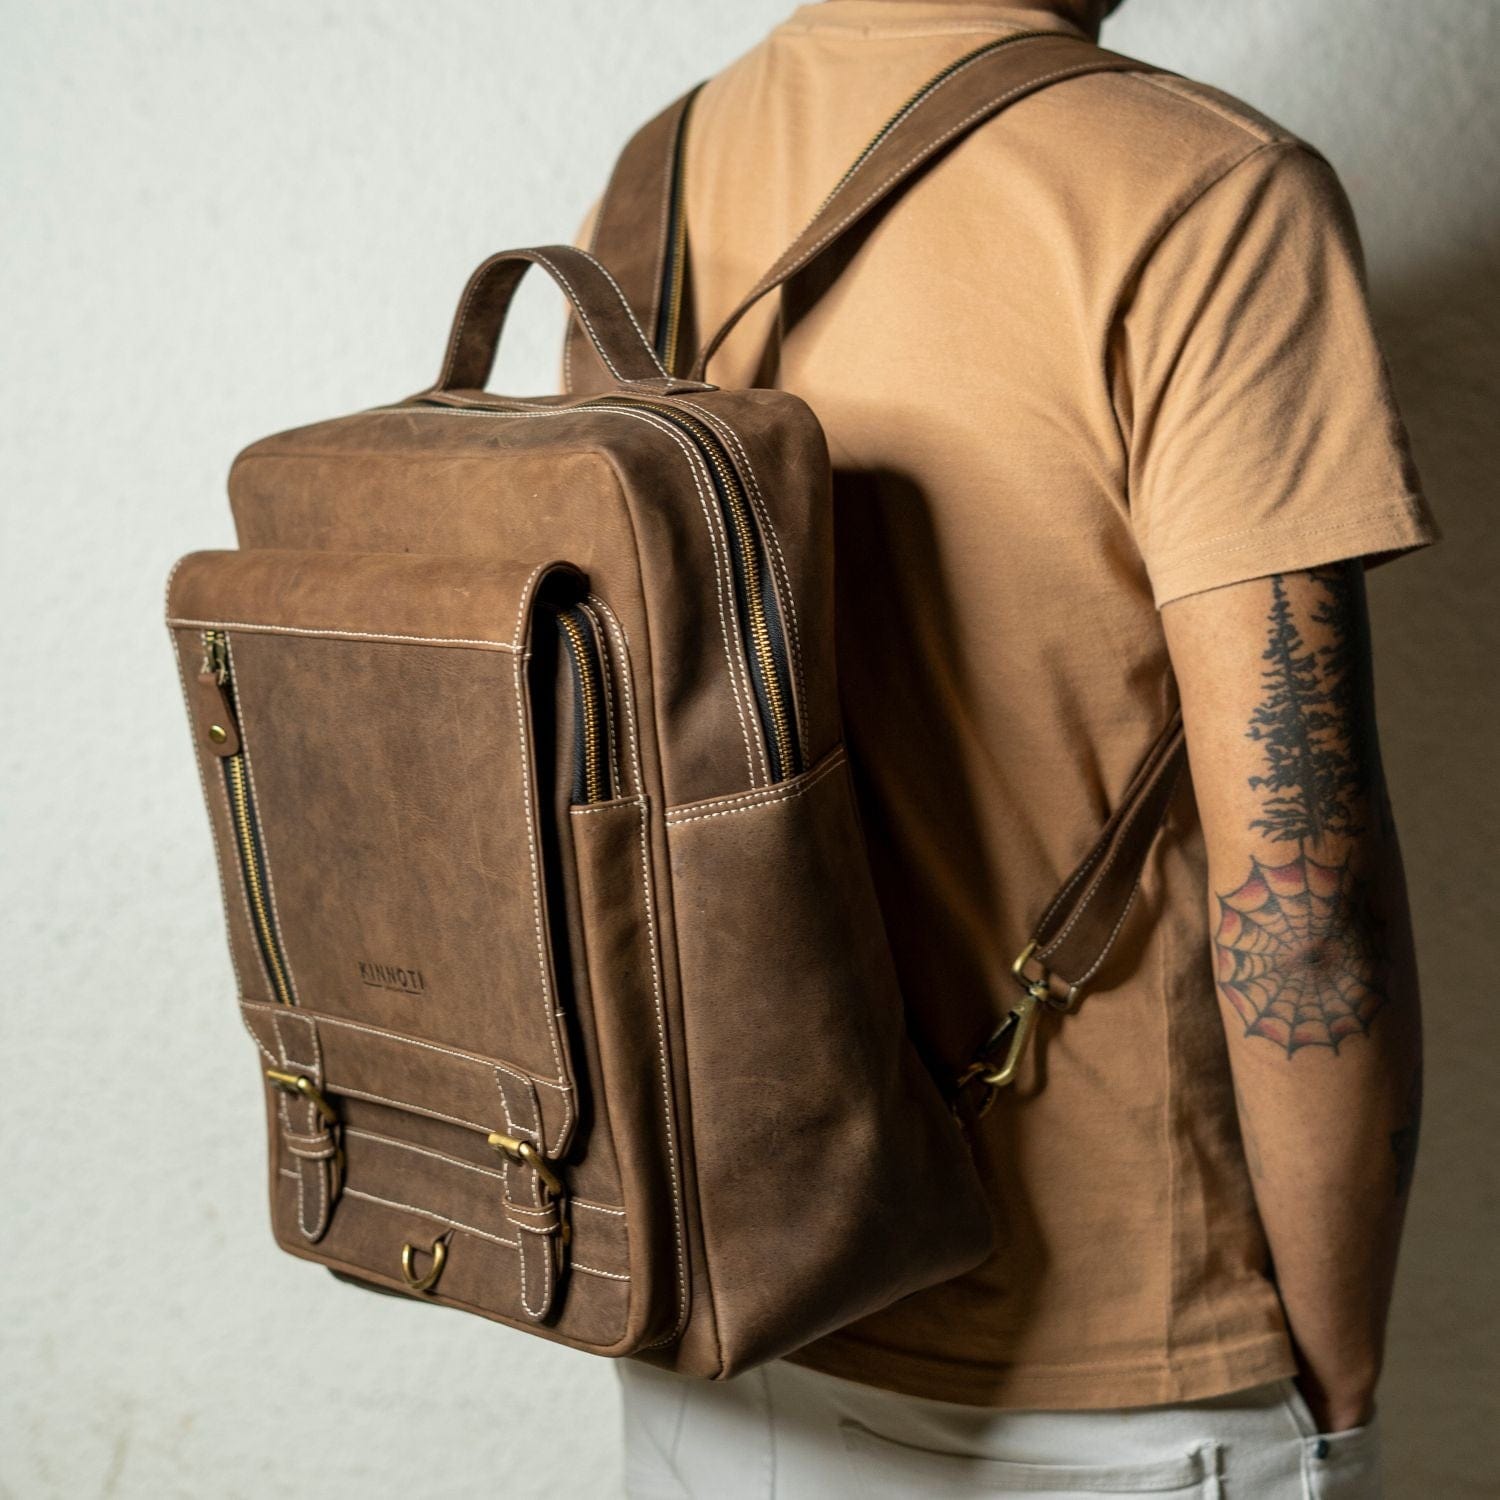 kinnoti LAPTOP BAGS Vintage Leather Backpack